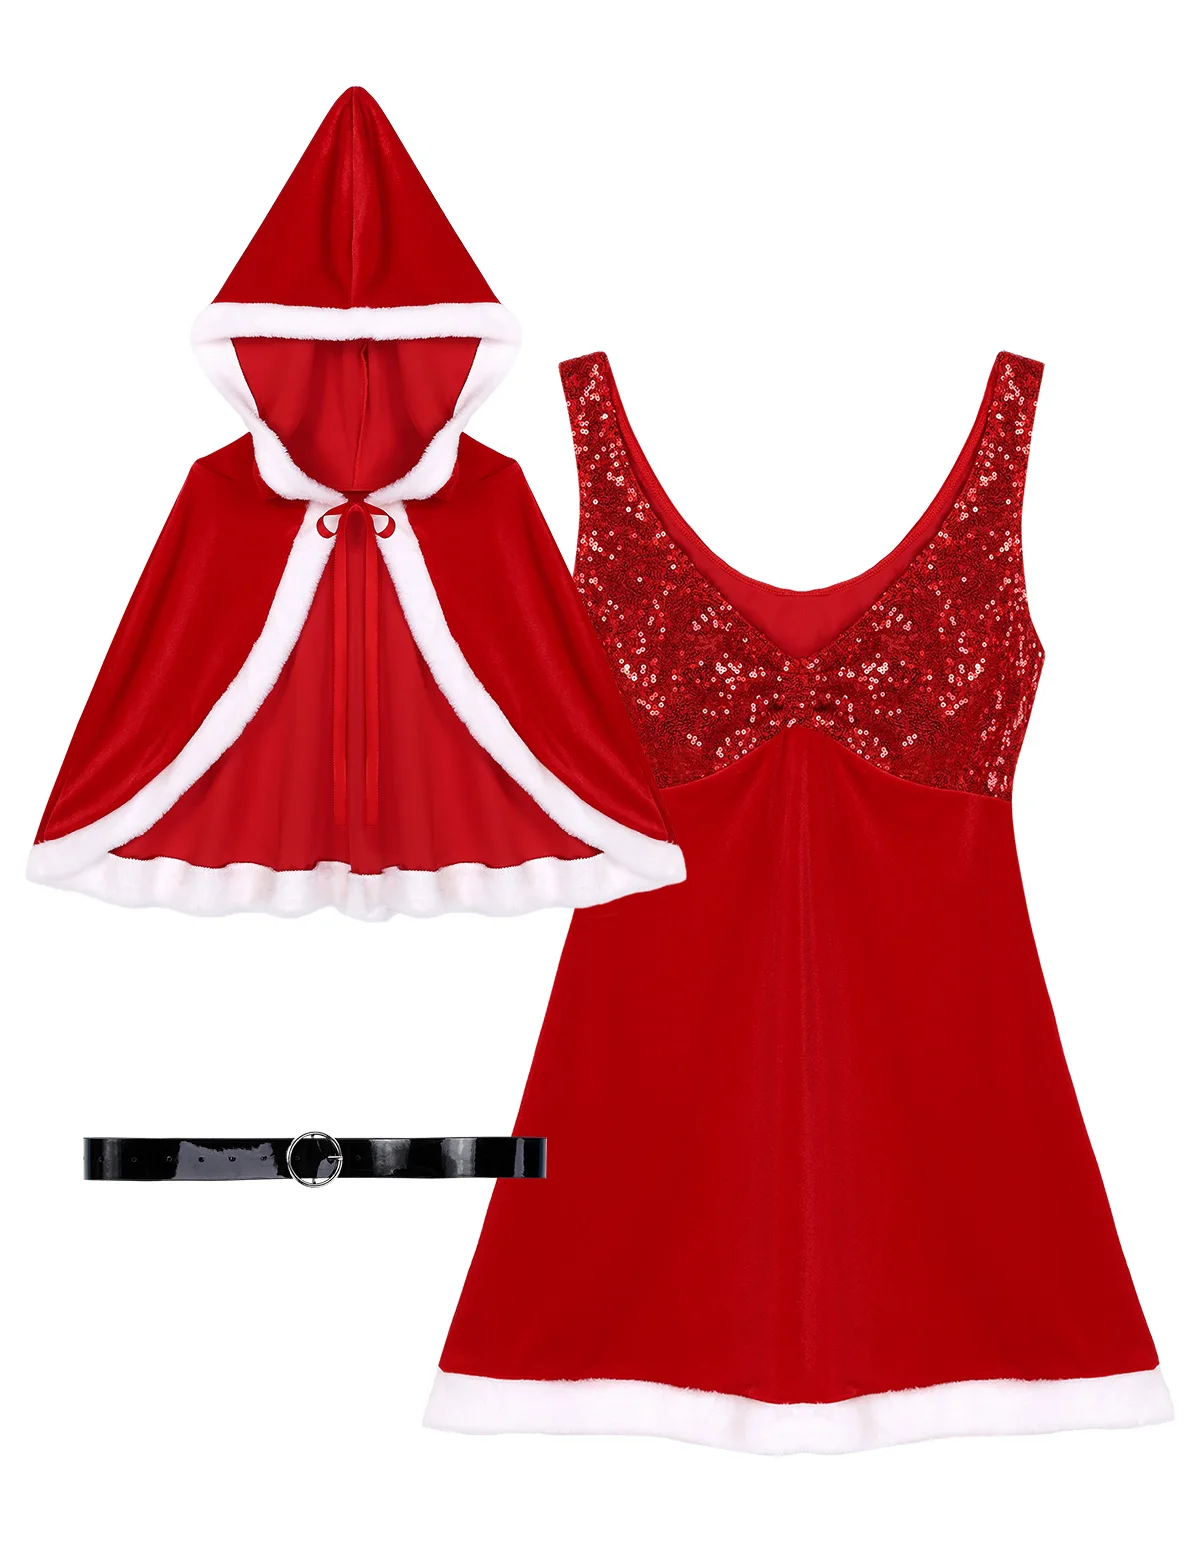 DPOIS, Женская рождественская одежда, маскарадный костюм Санта-Клауса На Хэллоуин для взрослых, блестящее платье, накидка и пояс, новогодний костюм